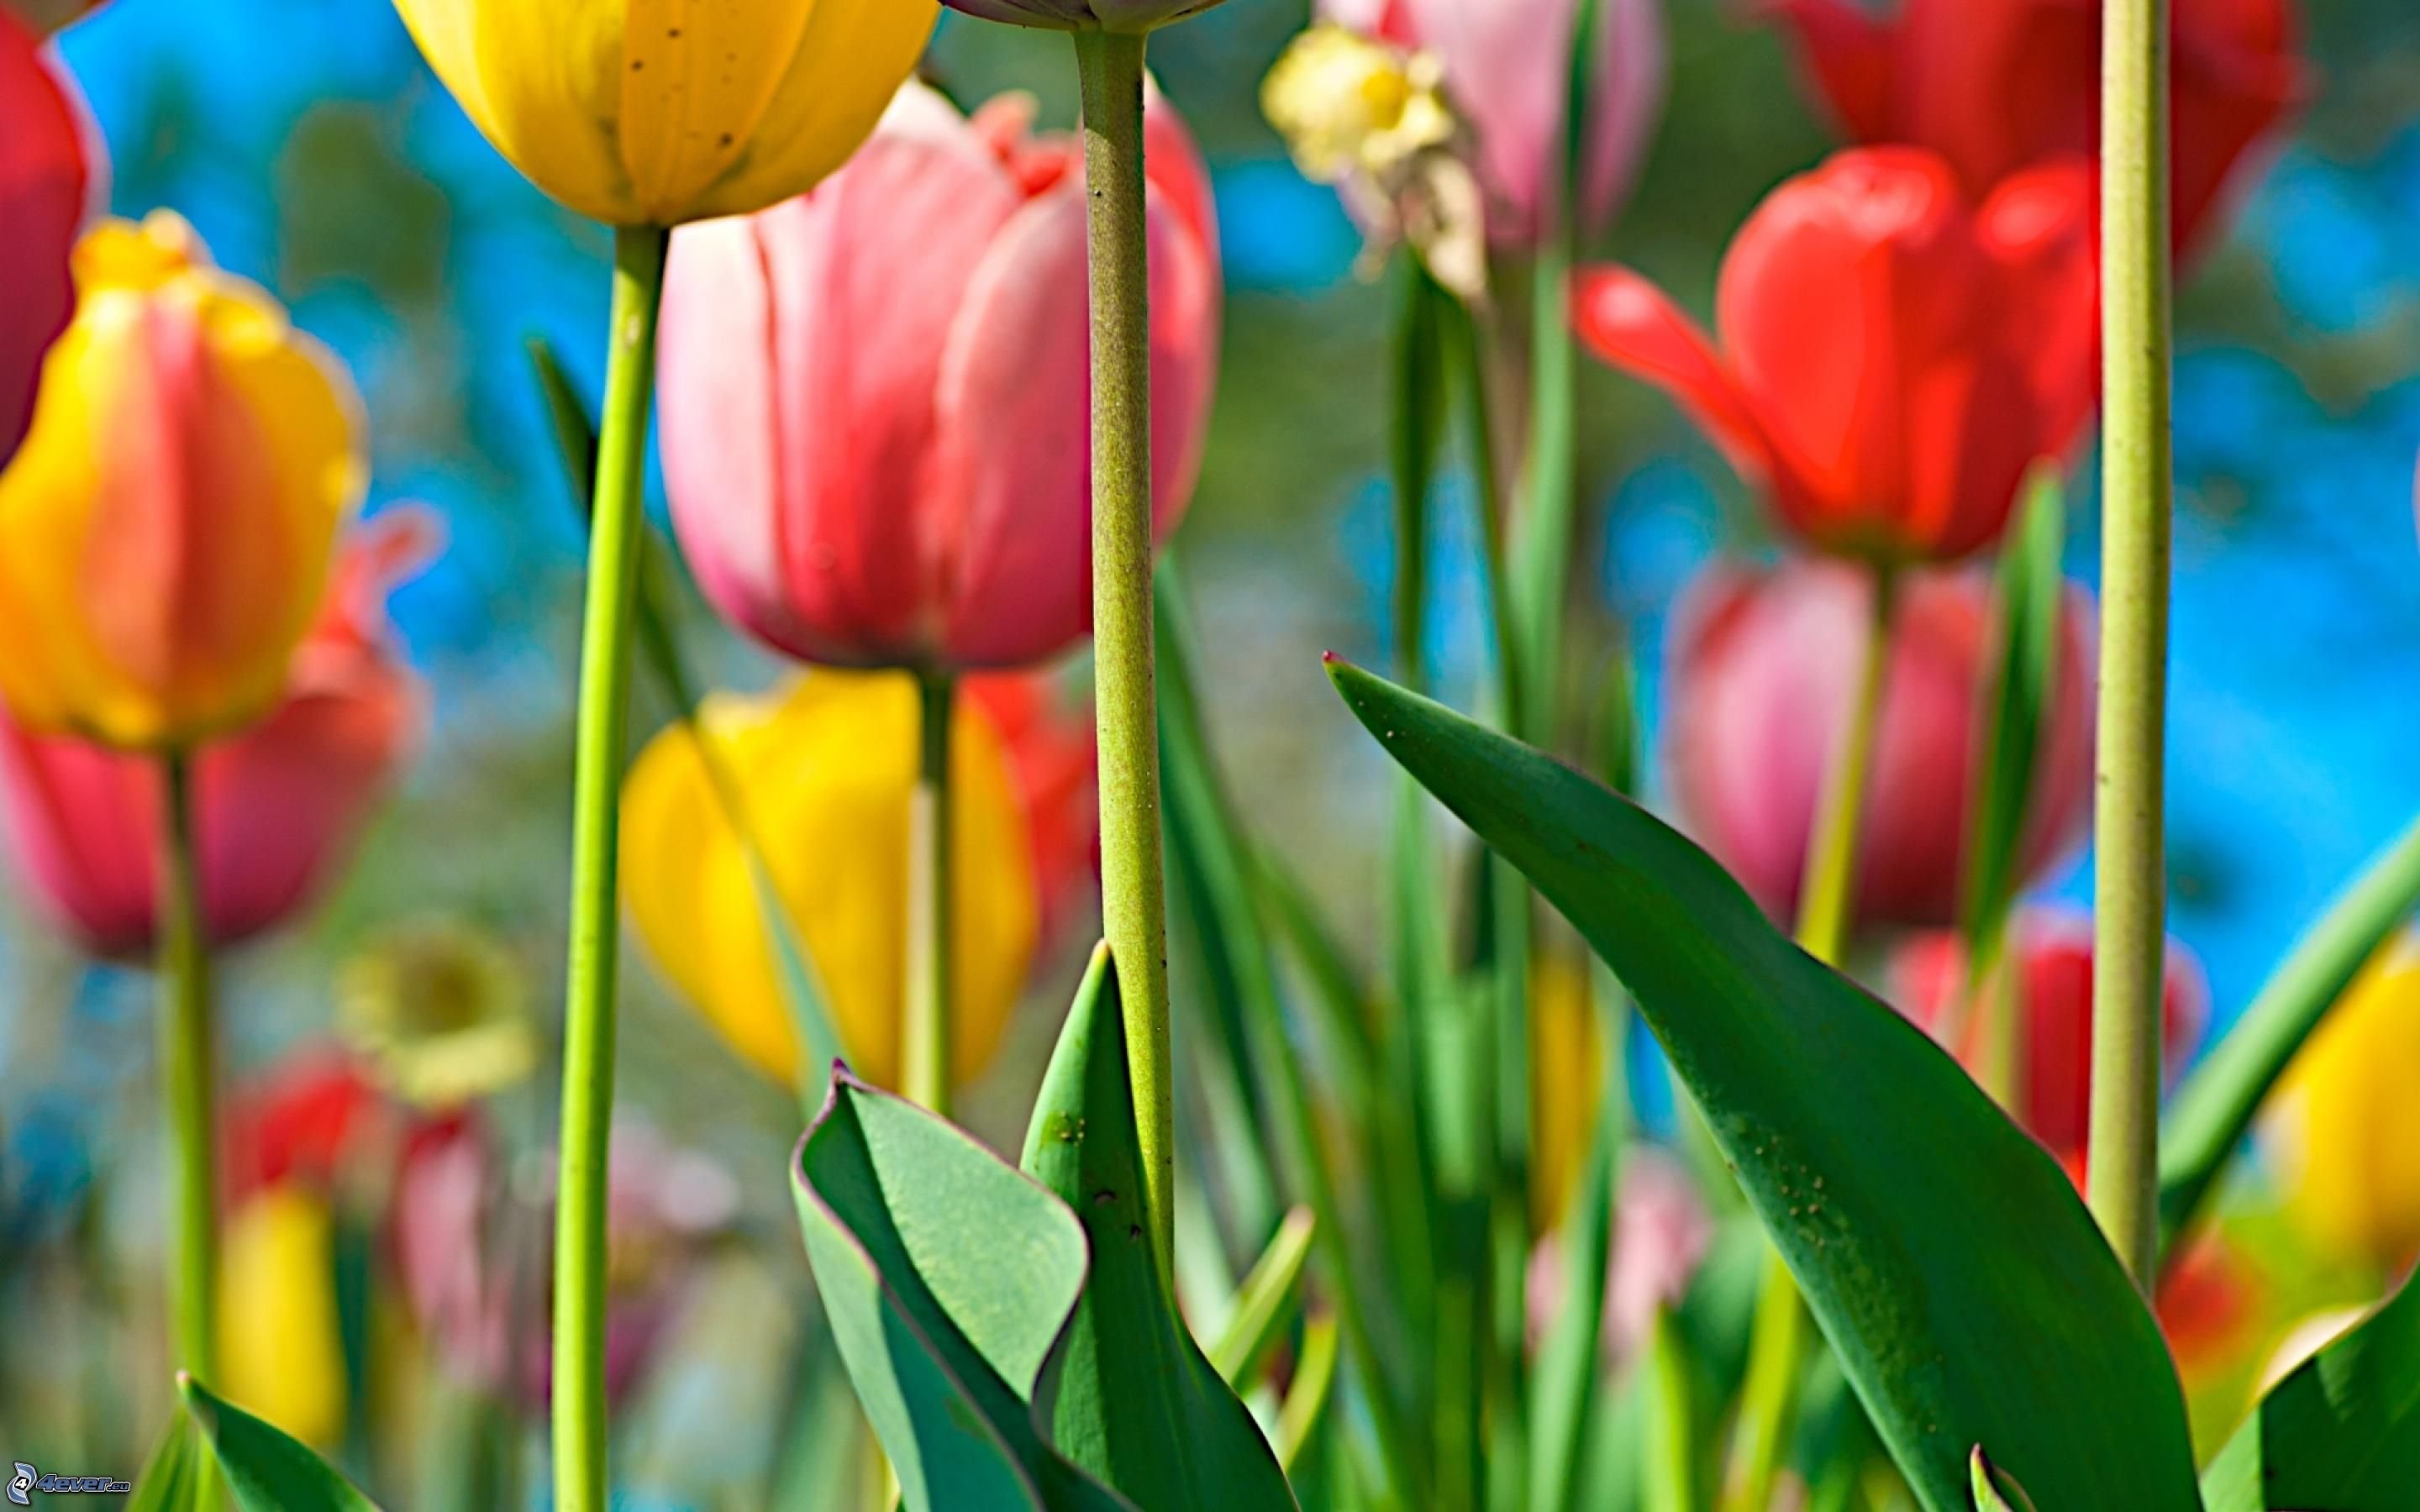 Обои с тюльпанами на телефон. Цветы тюльпаны. Тюльпаны разноцветные. Весенние тюльпаны. Тюльпан многоцветный.